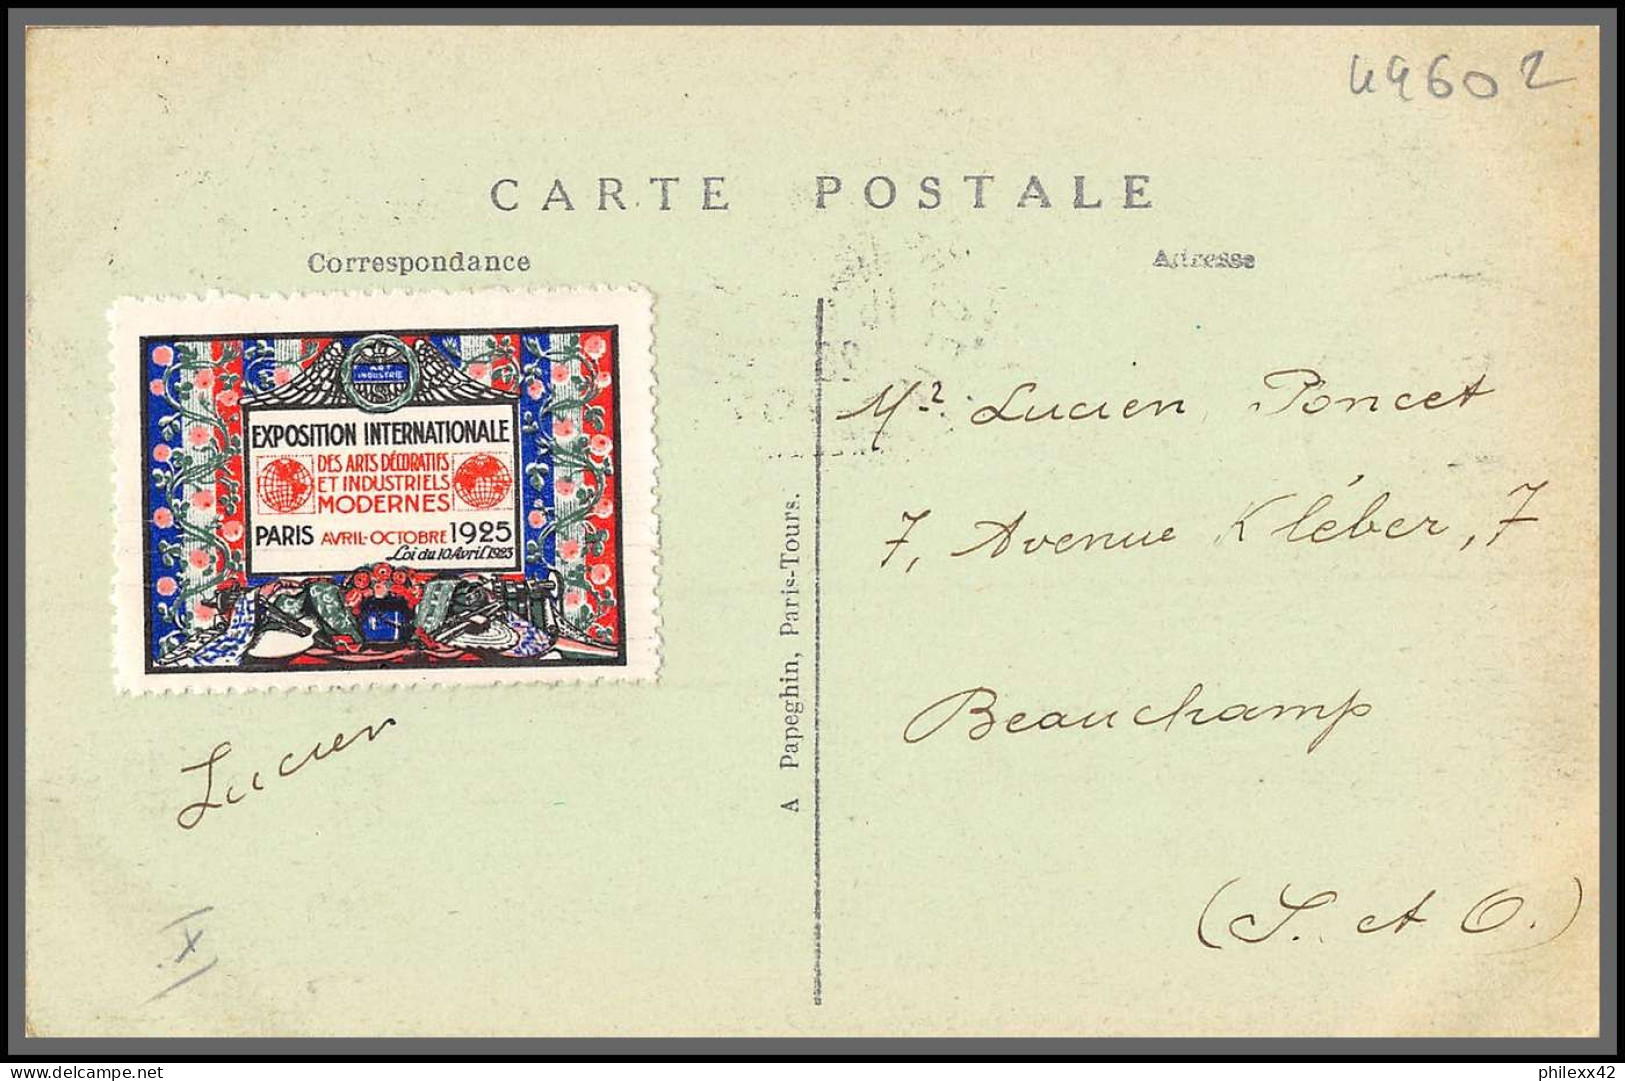 49602 N°211 Vue Générale Exposition Arts Décoratifs Paris 1925 Vignette France Carte Maximum (card) - ...-1929